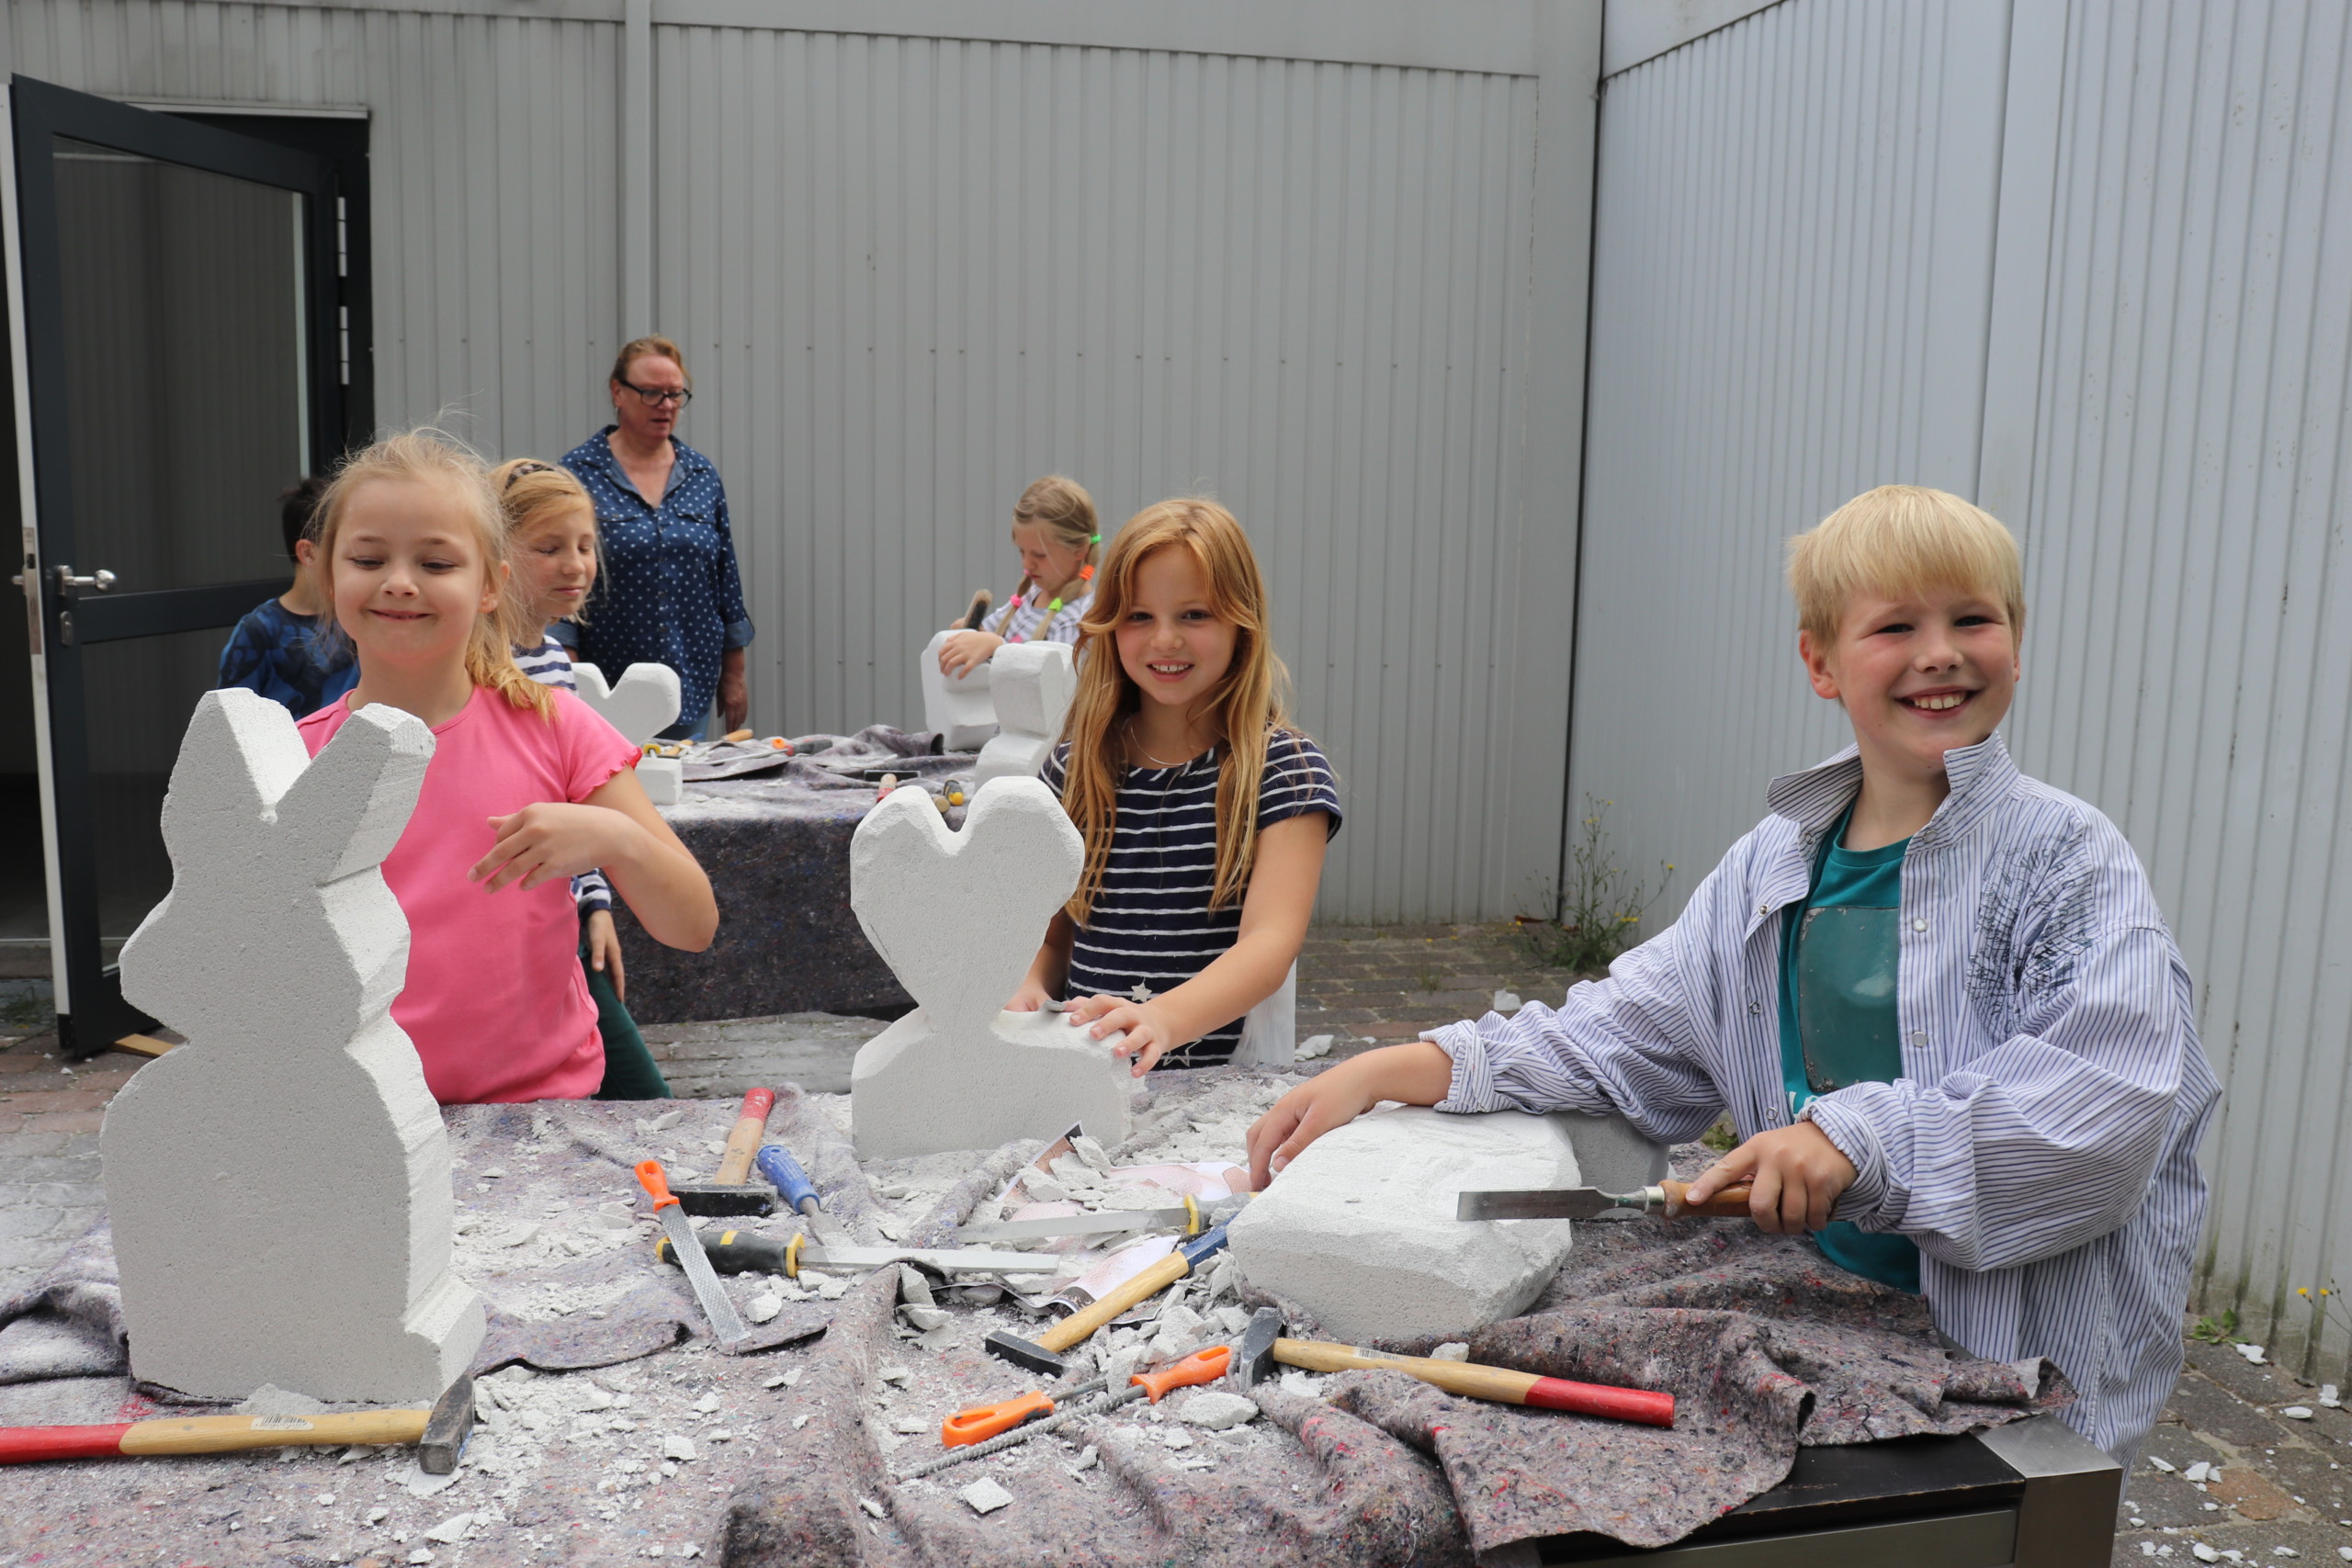 Alle Teilnehmer hatten viel Spaß beim Herstellen von Ytong-Skulpturen. Aufnahme: Wlodarczyk/Gemeinde Barßel